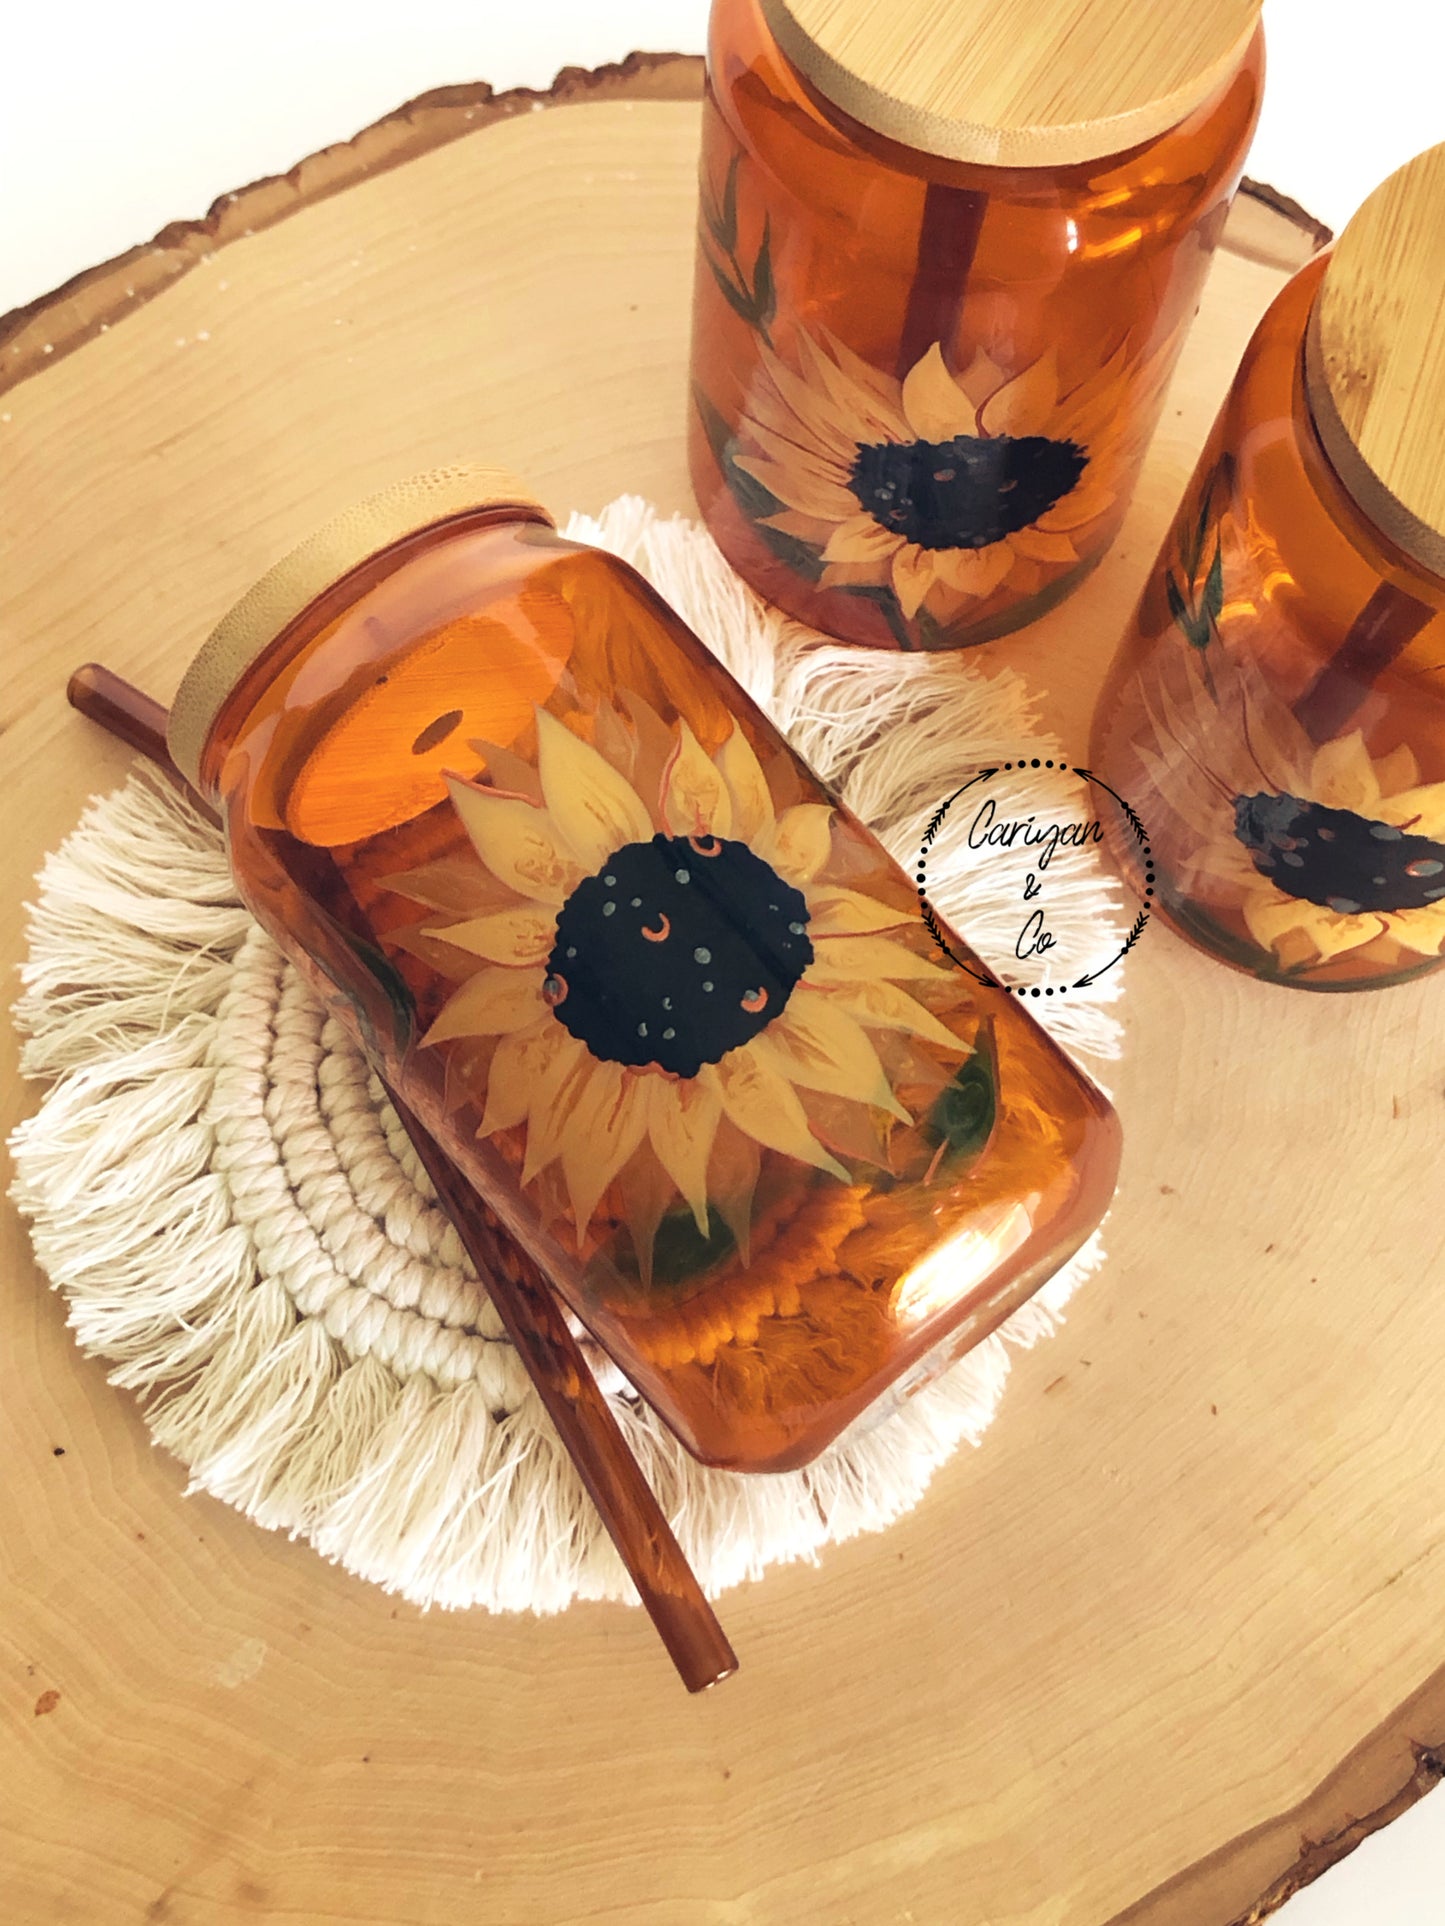 Sunflower Glass Tumbler